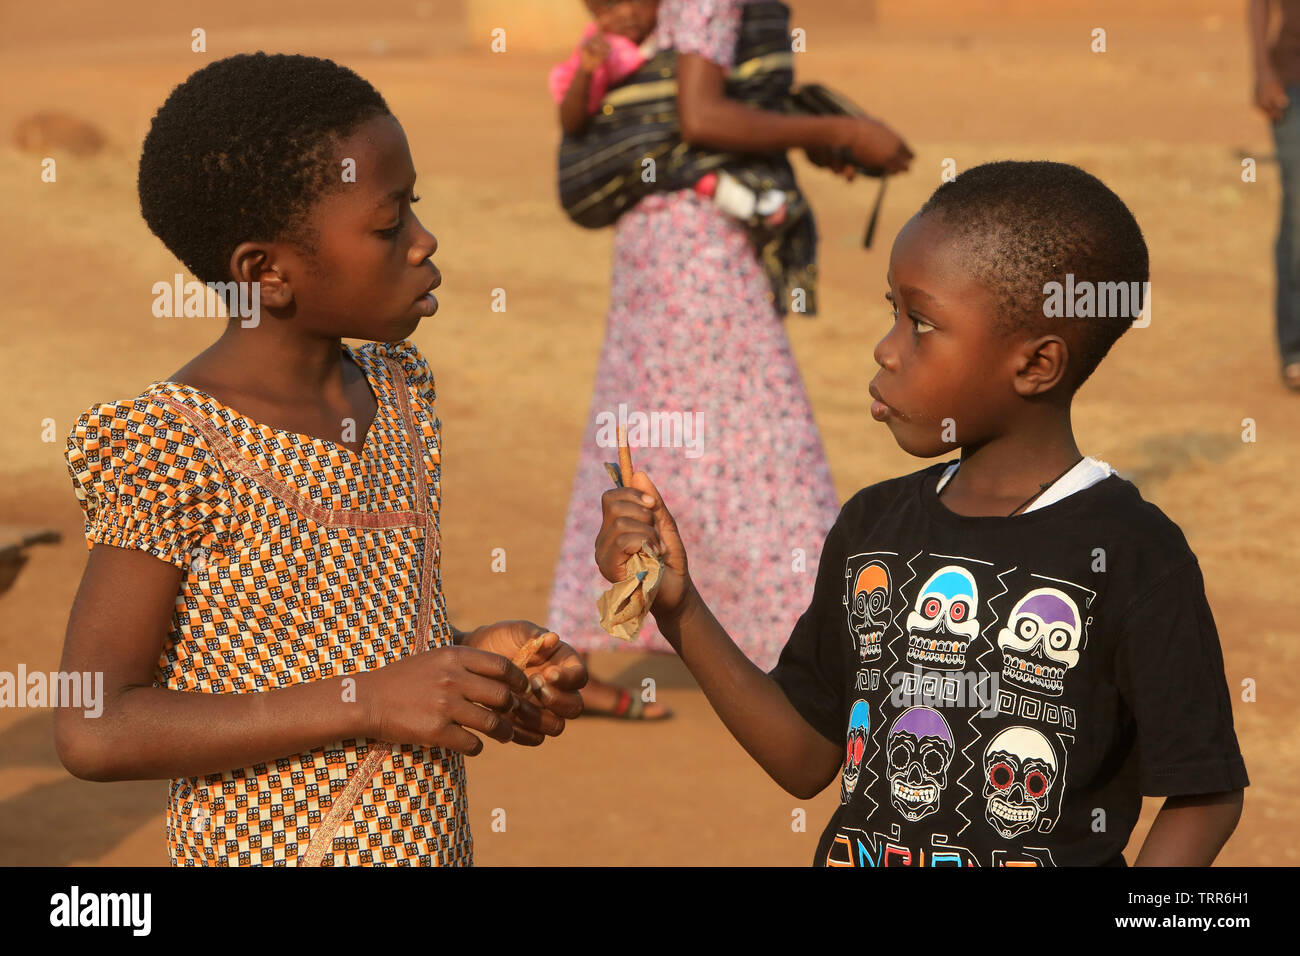 Jeunes enfants togolais discutant. Atakpamé. Il Togo. Afrique de l'Ouest. Foto Stock